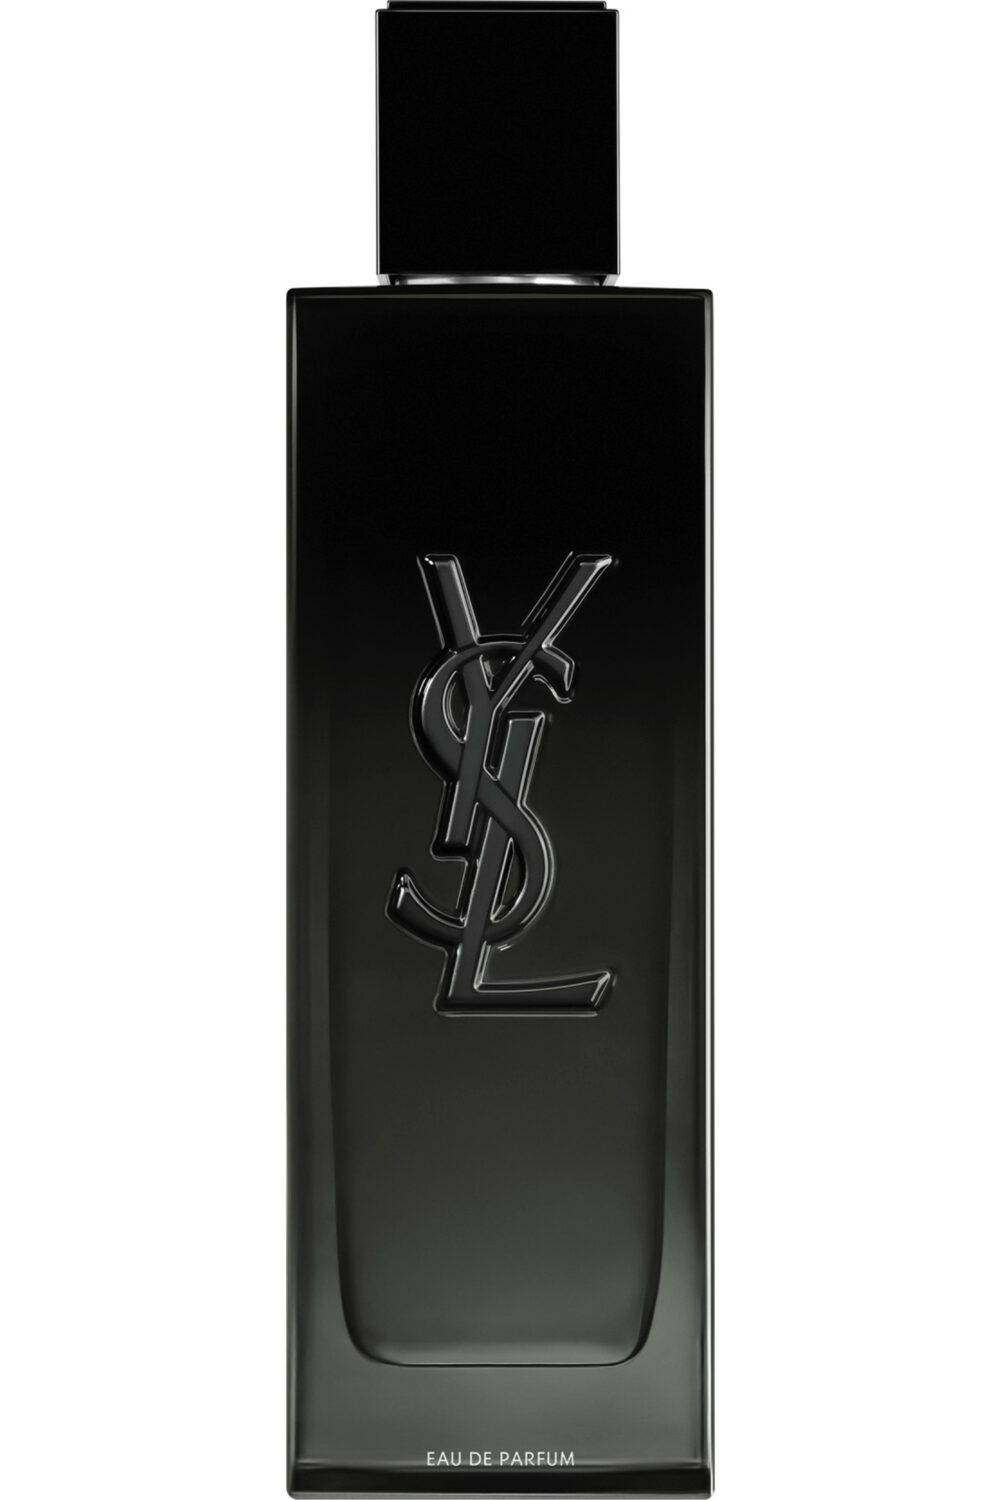 Yves Saint Laurent - Eau de parfum MYSLF rechargeable 100ml